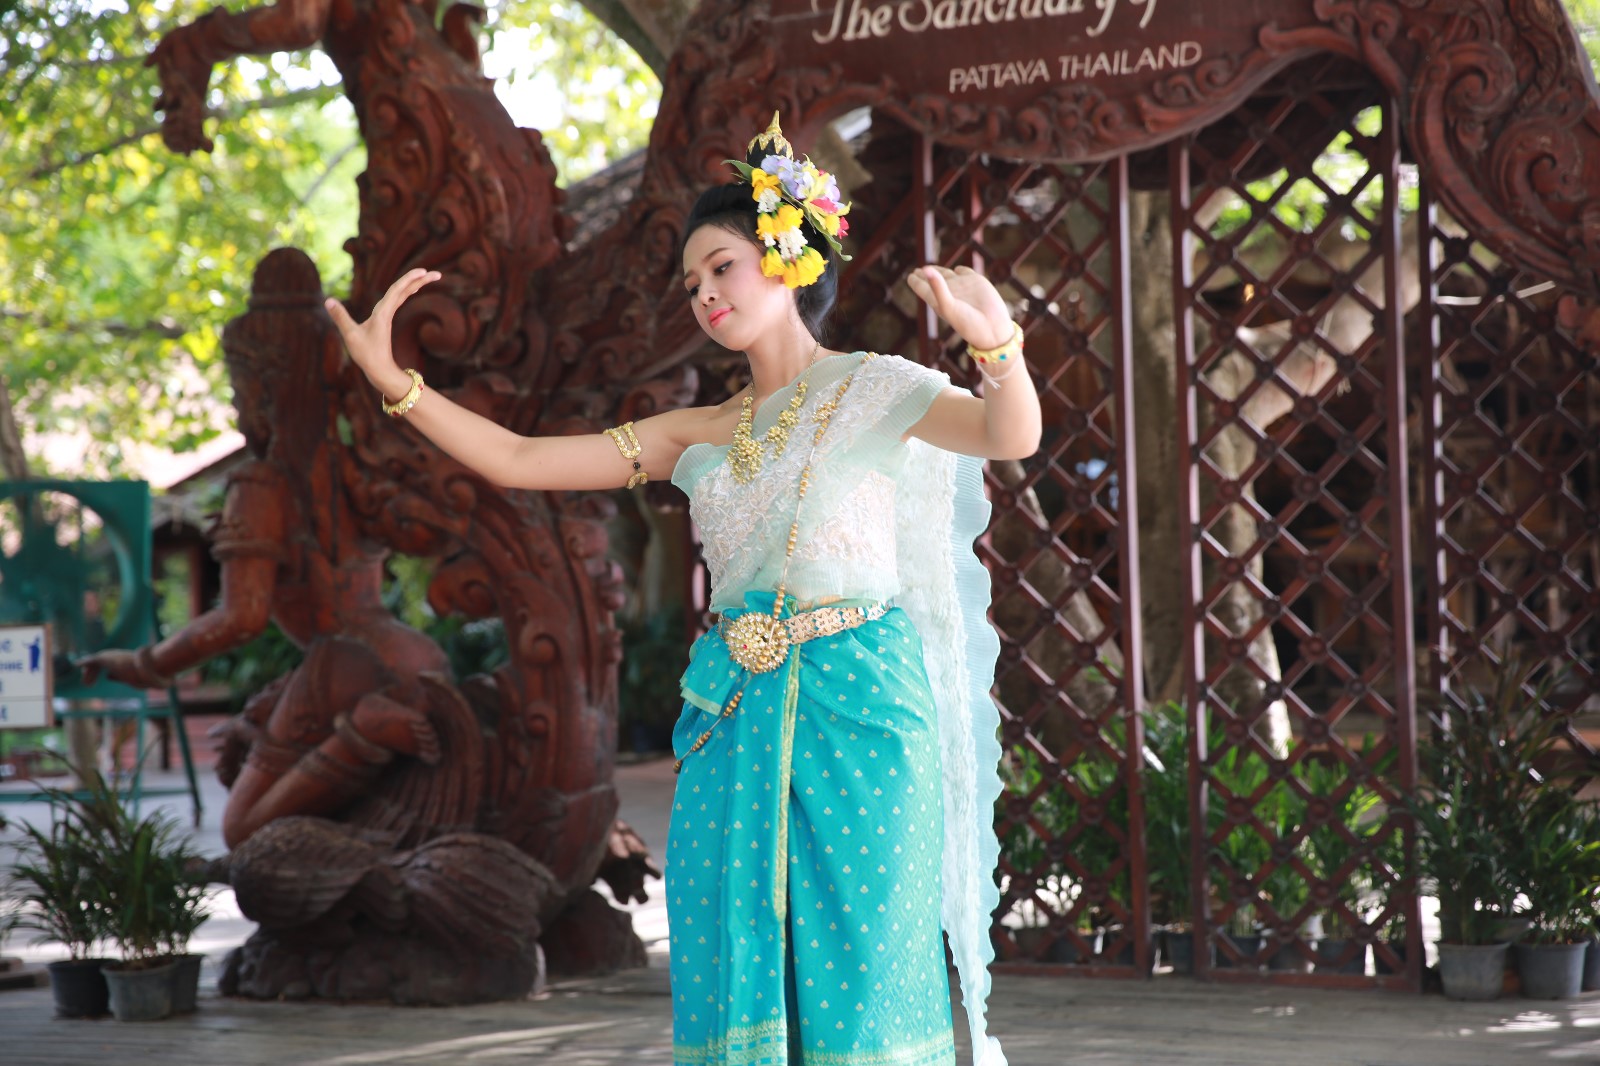 跳舞T的最好ramayana故事Khon泰国表演艺术 库存图片. 图片 包括有 跳舞, 泰国, 舞蹈, 手势 - 90916797